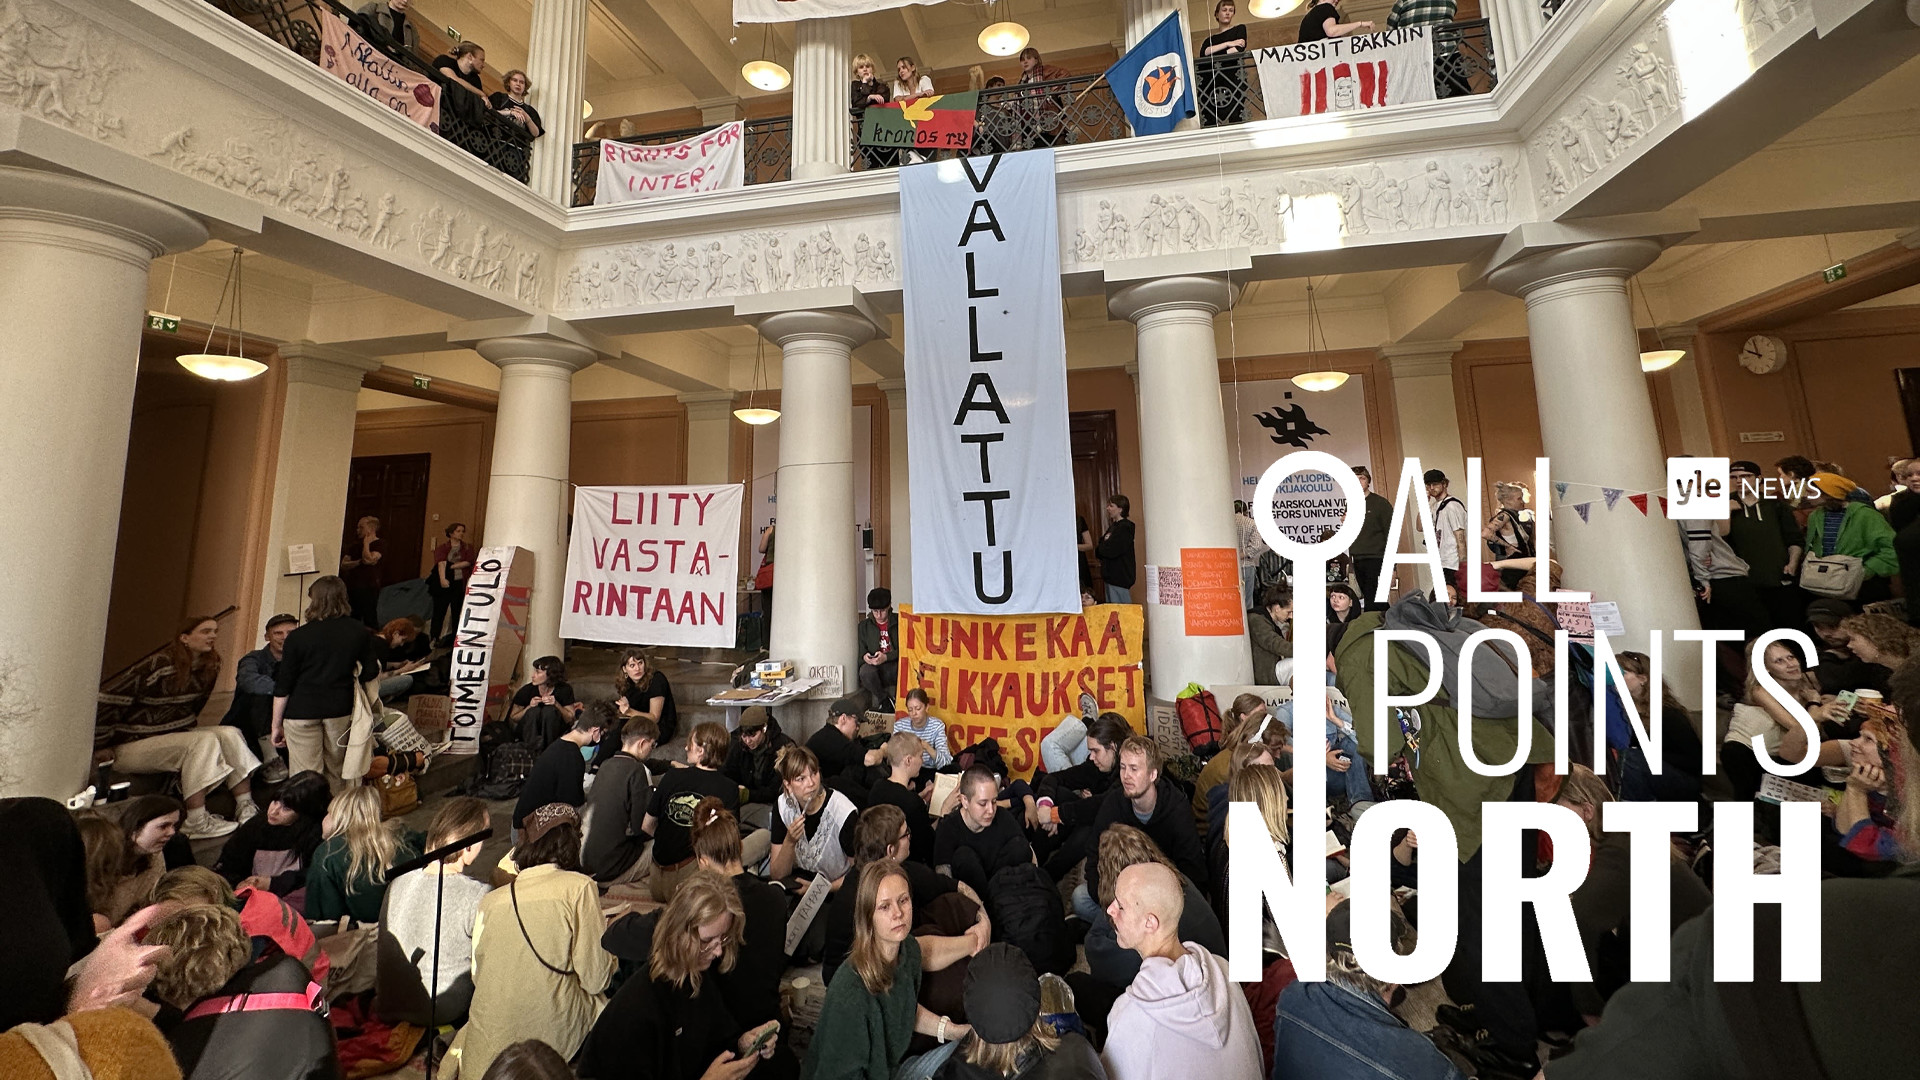 Podcast de APN: Luchando por los derechos en toda Finlandia